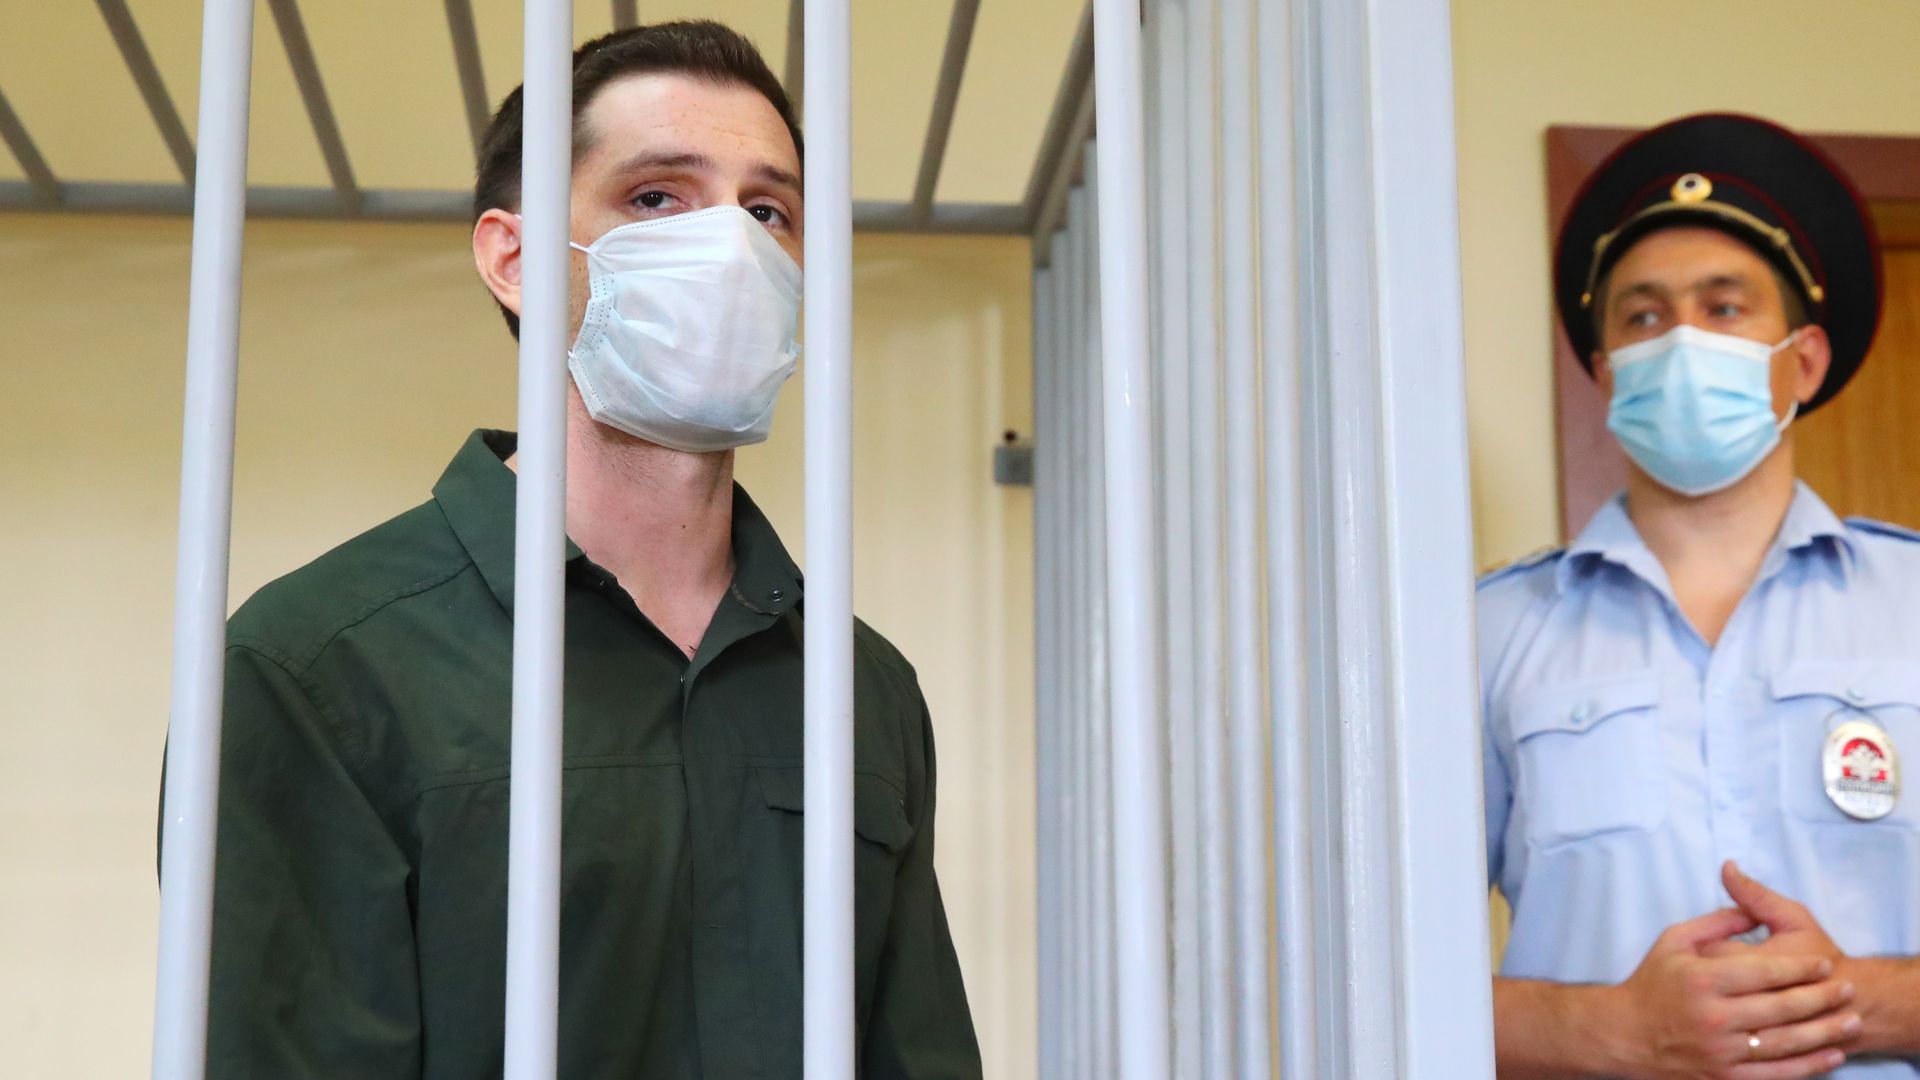 Trevor Reed stands imprisoned behind bars